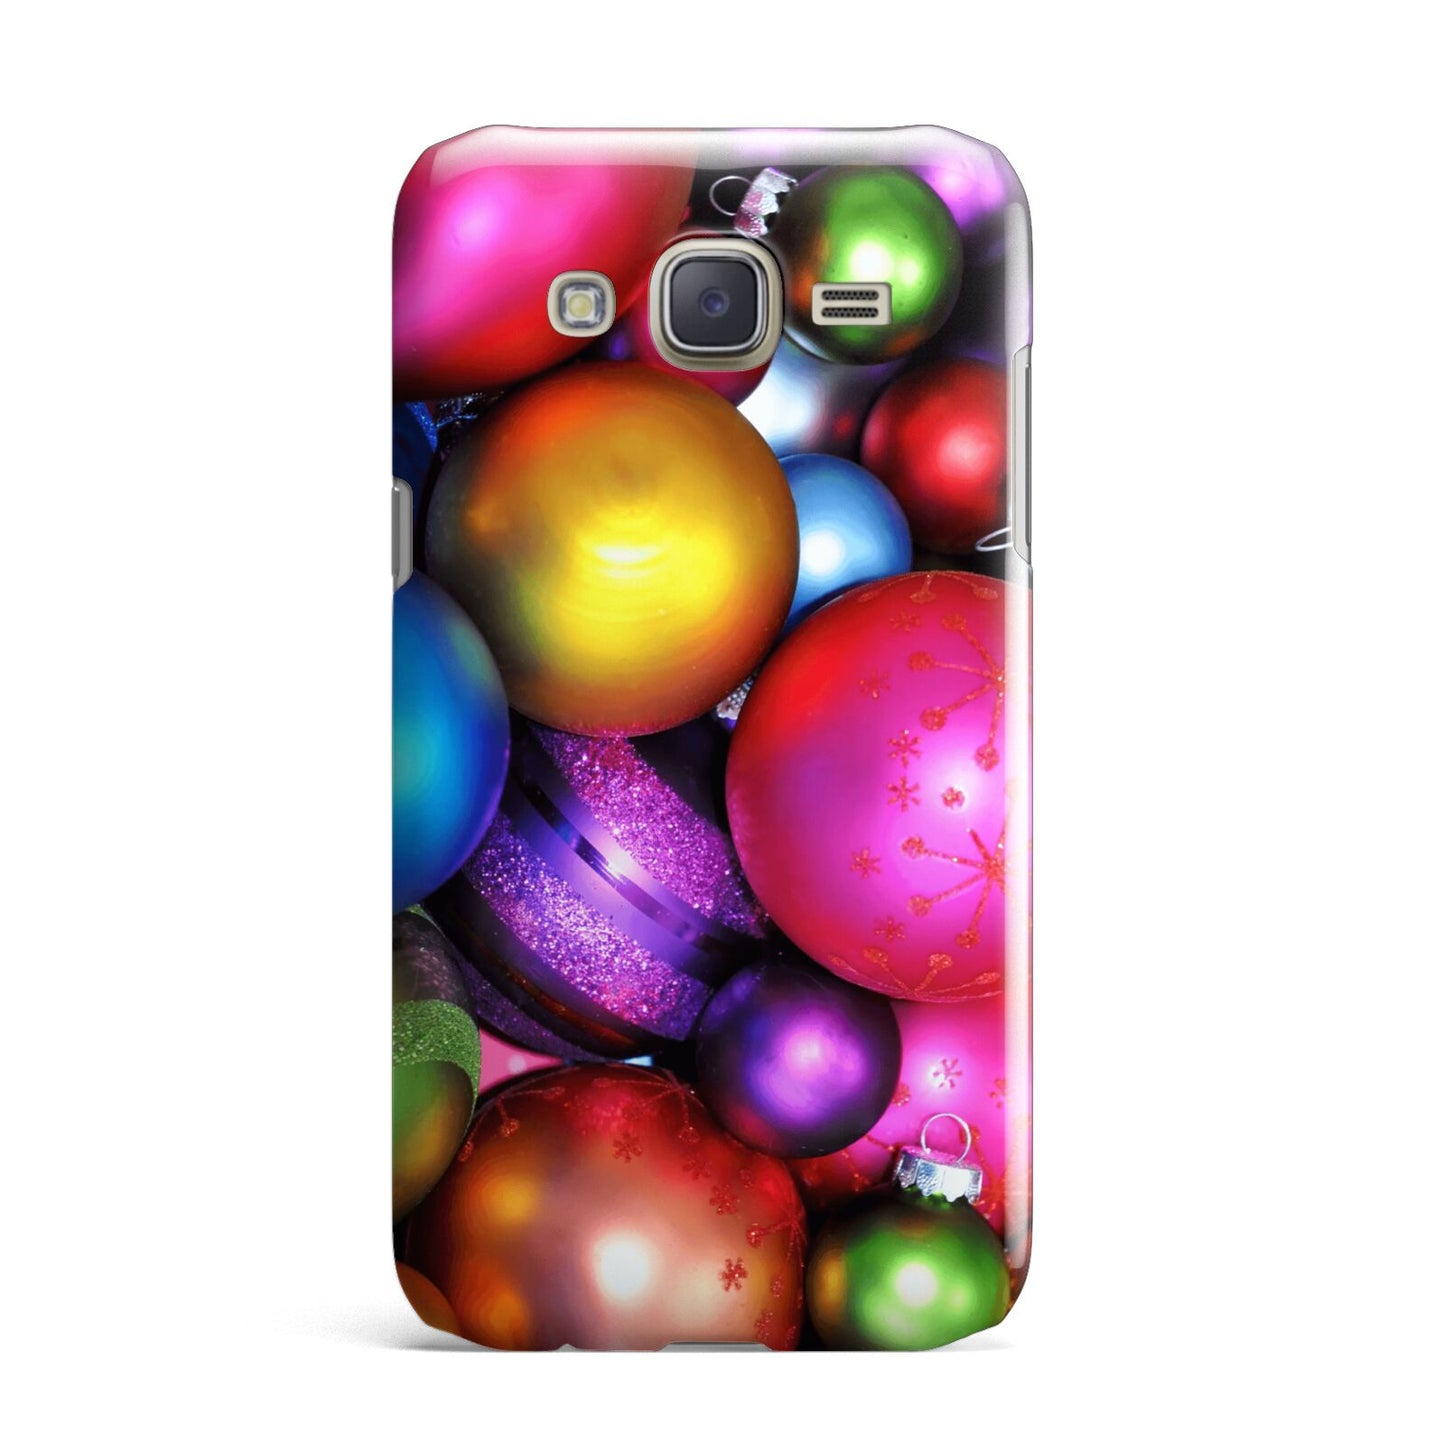 Bauble Samsung Galaxy J7 Case